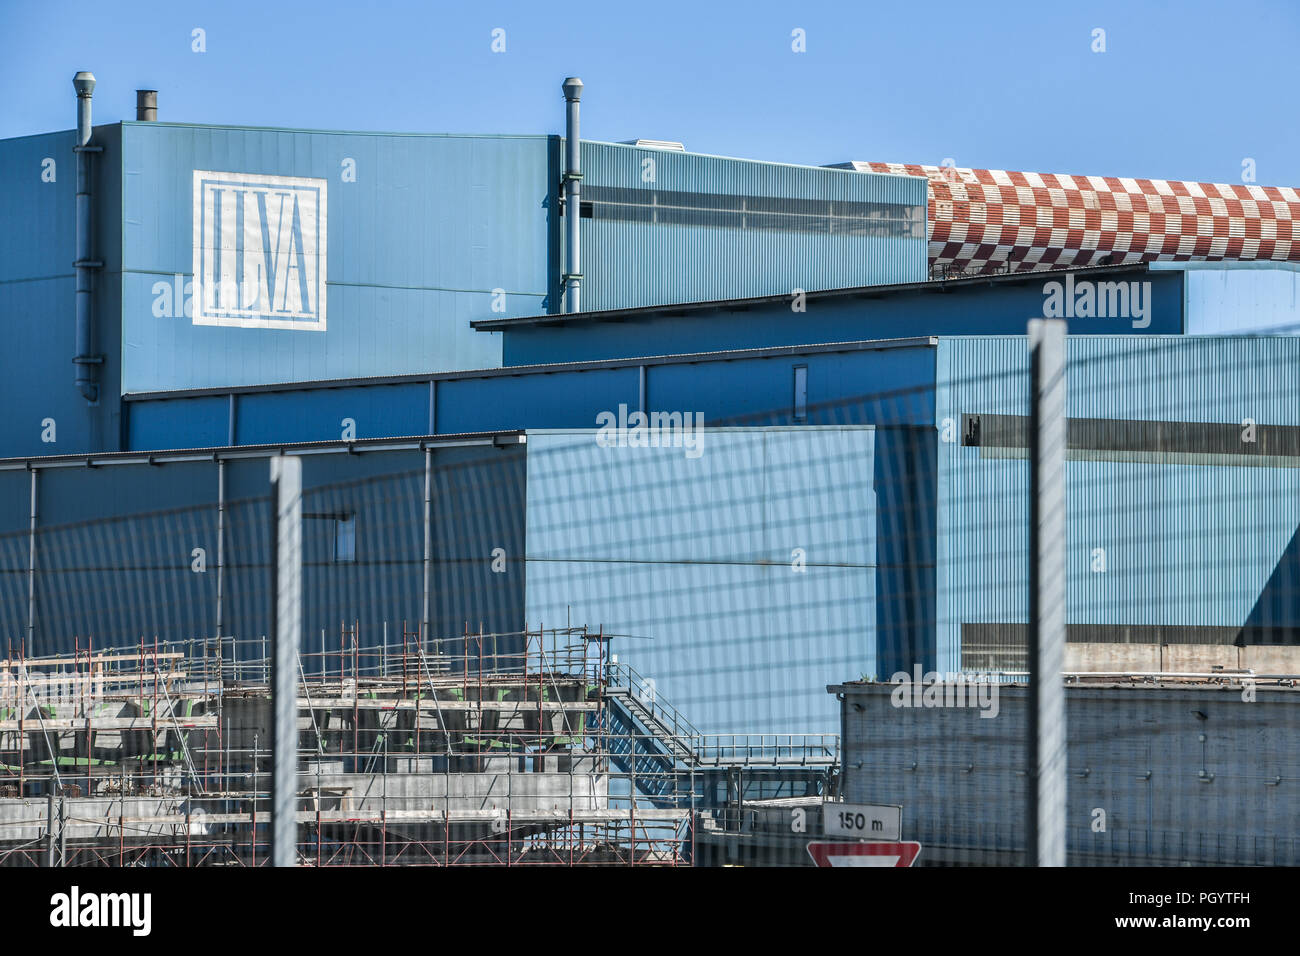 Genova, Italia - 15 agosto 2018: una vista generale dell'impianto siderurgico ILVA, la più grande acciaieria italiana società in Europa. Foto Stock